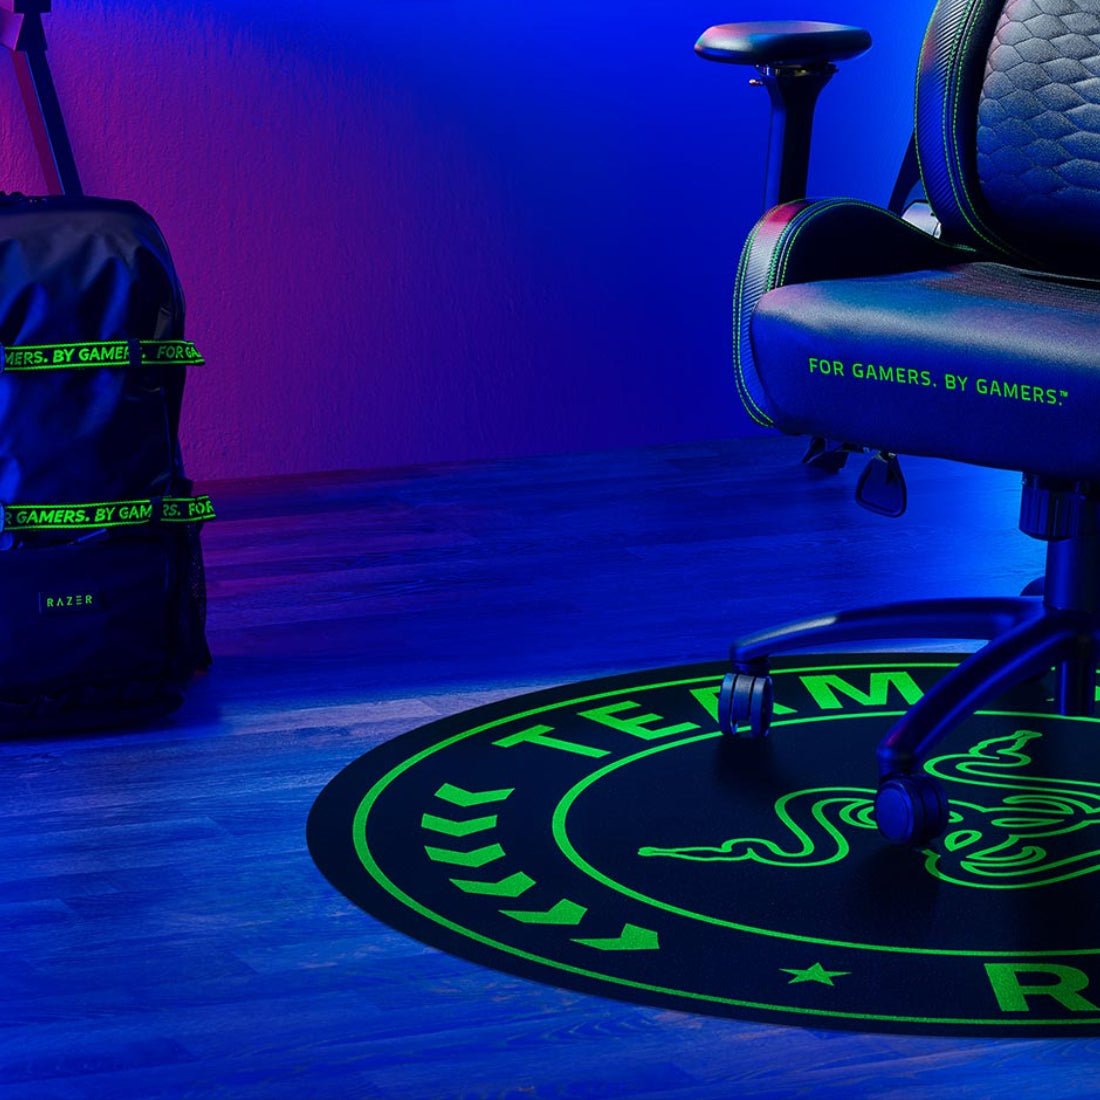 Razer Team Razer Floor Mat - Black & Green - حصير - Store 974 | ستور ٩٧٤